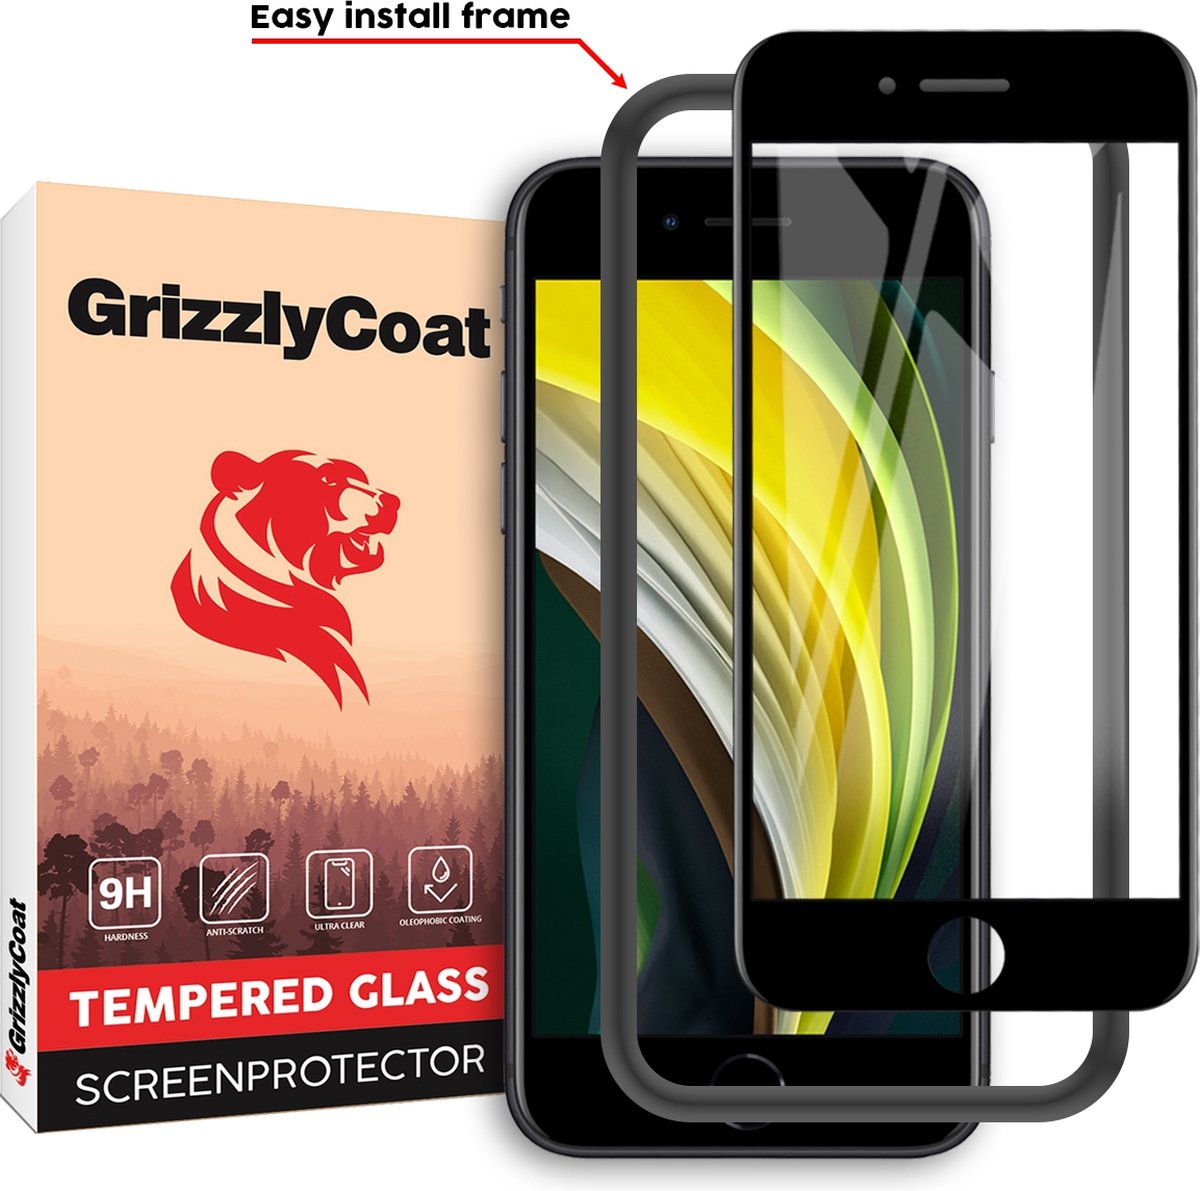 GrizzlyCoat Easy Fit Screenprotector geschikt voor Apple iPhone 6s Glazen Screenprotector - Case Friendly + Installatie Frame - Zwart